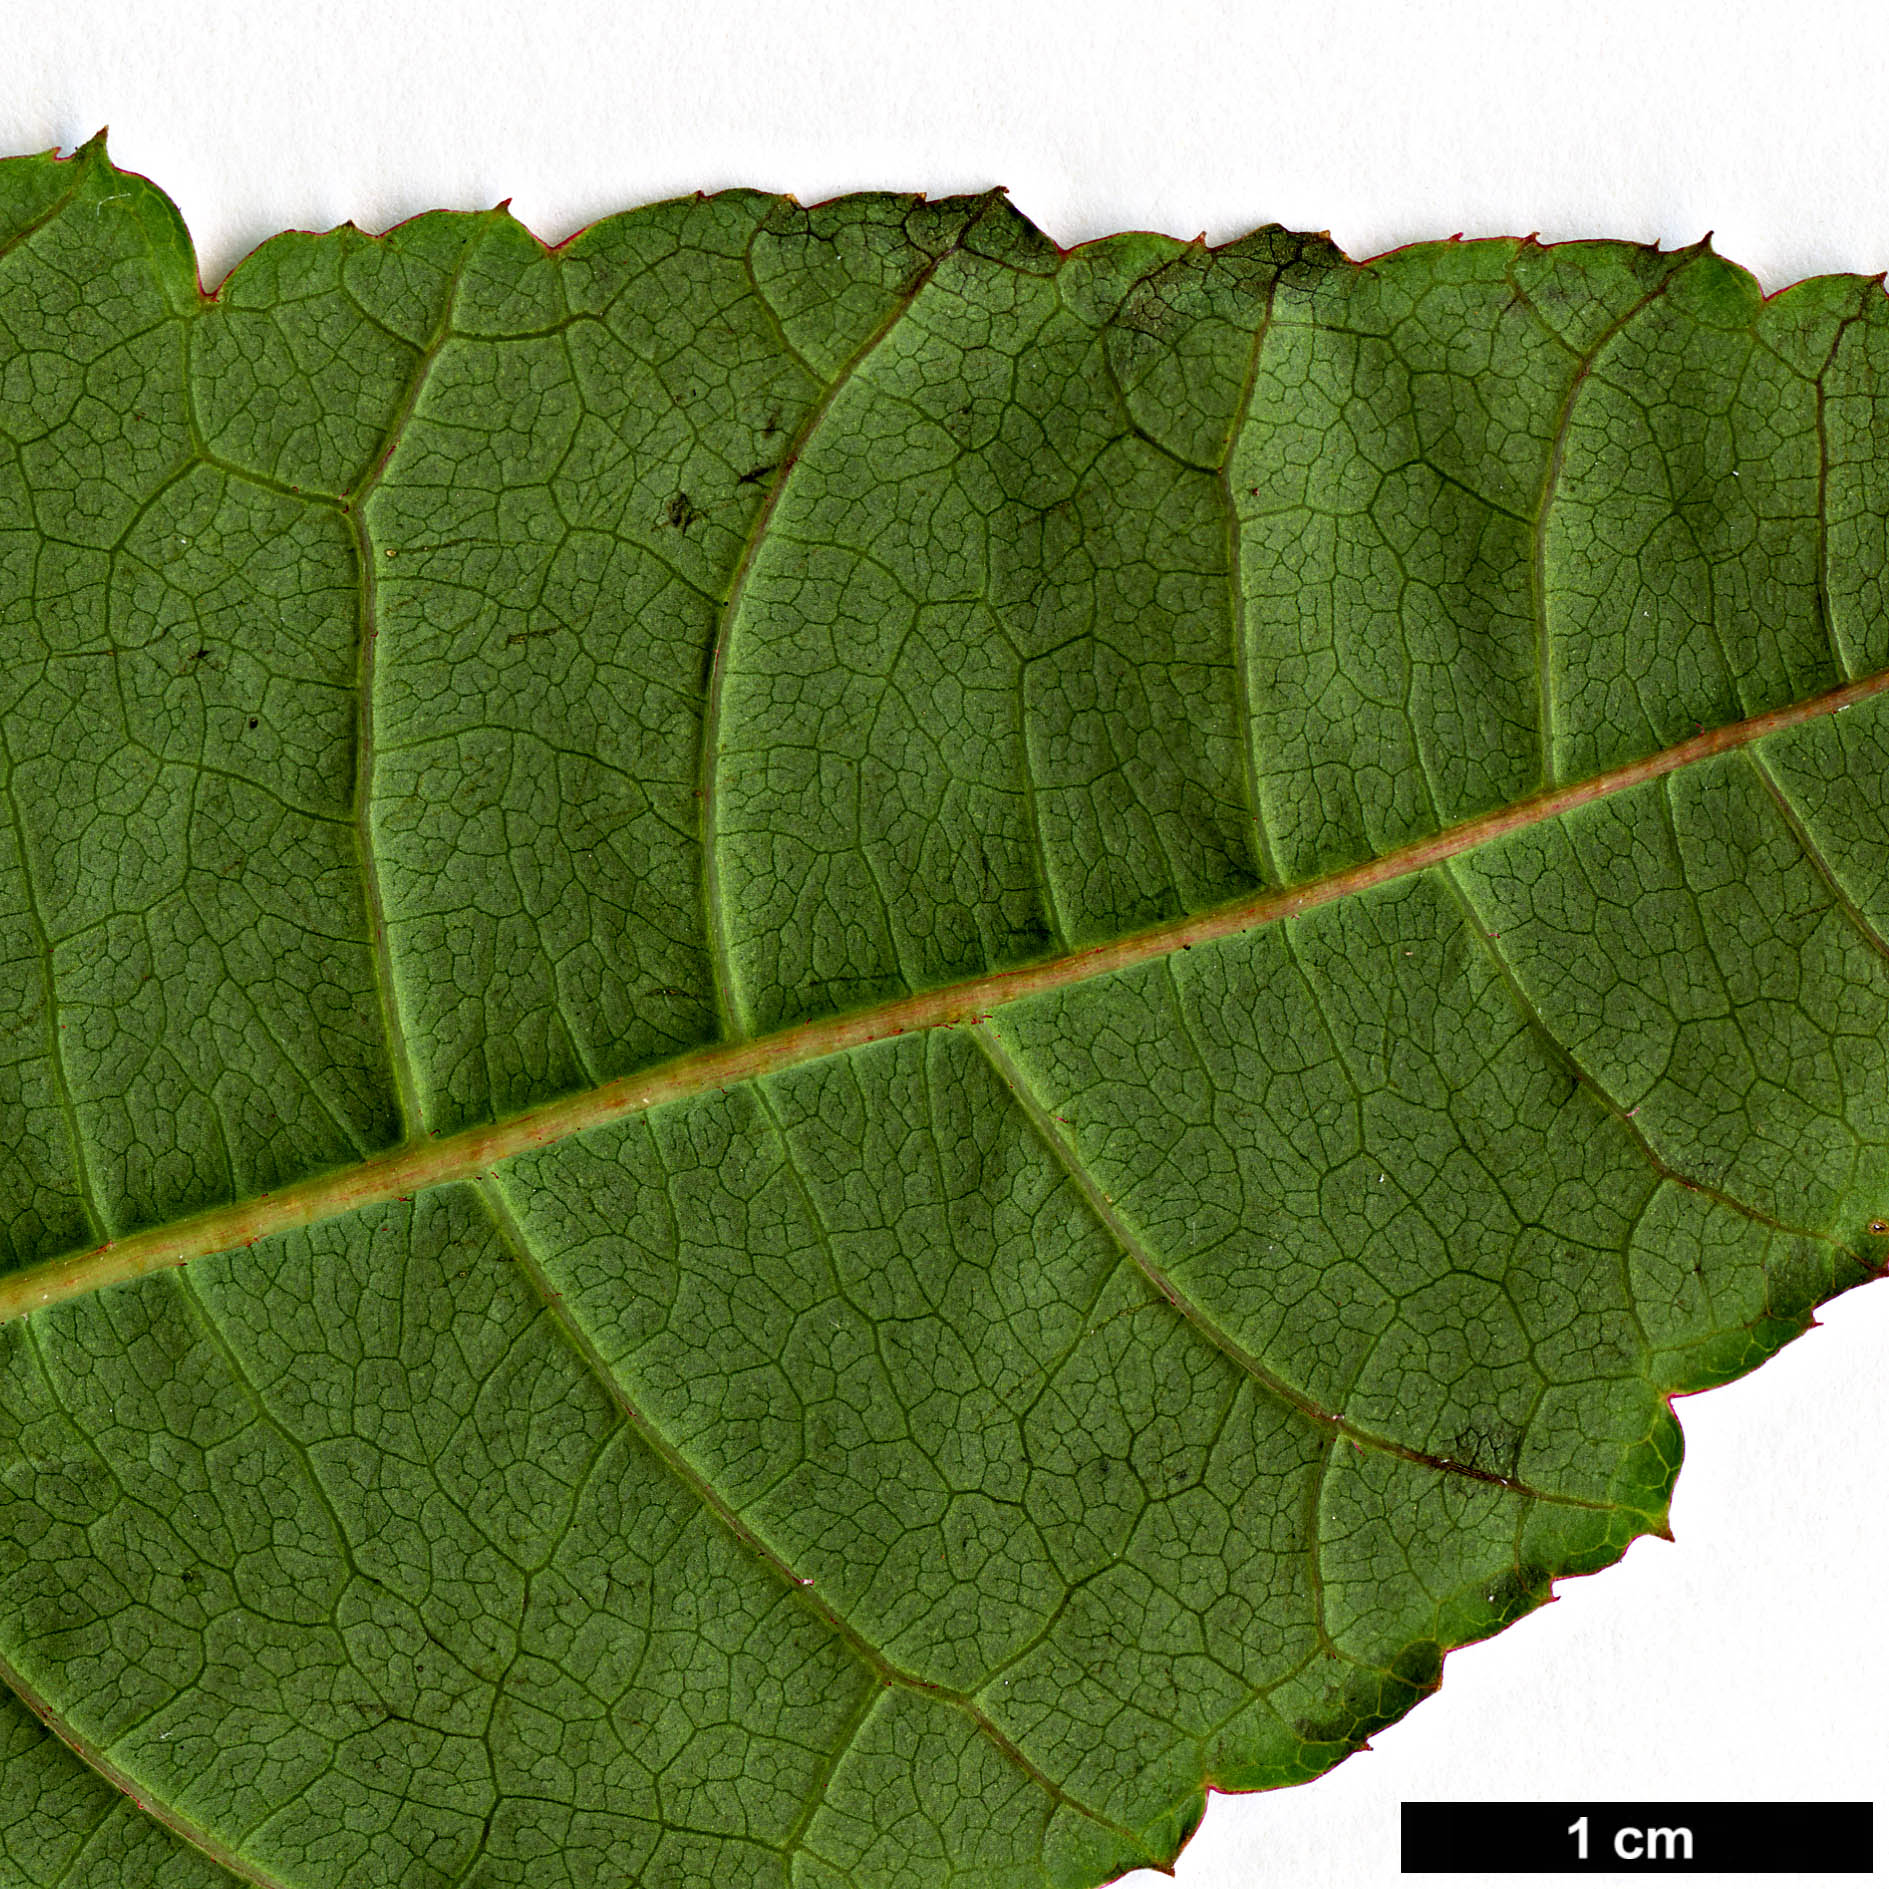 High resolution image: Family: Sapindaceae - Genus: Acer - Taxon: pectinatum - SpeciesSub: subsp. taronense